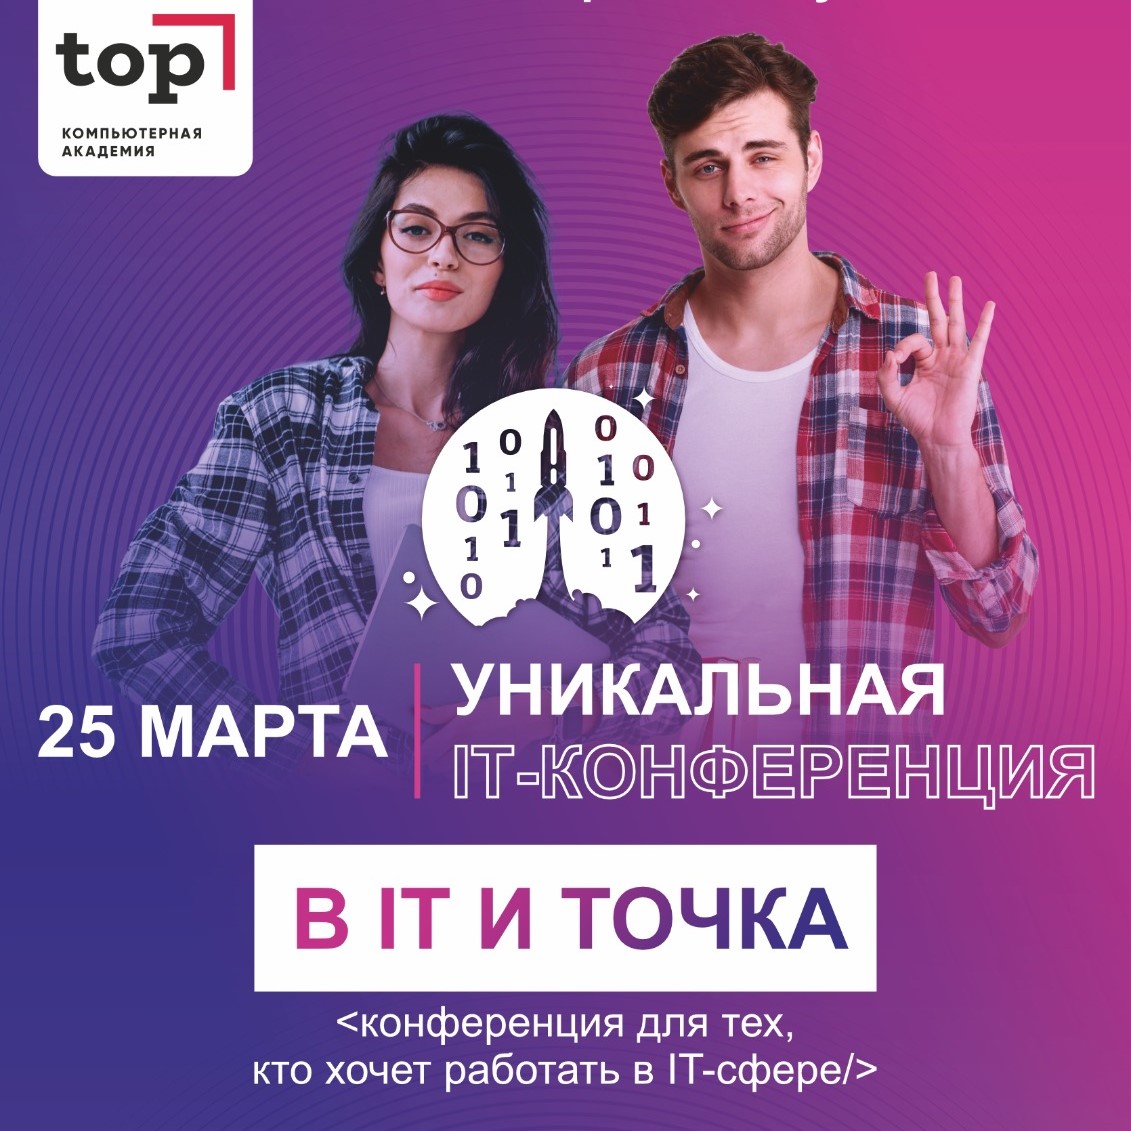 Приглашаем предпринимателей на IT-конференцию в Барнауле 